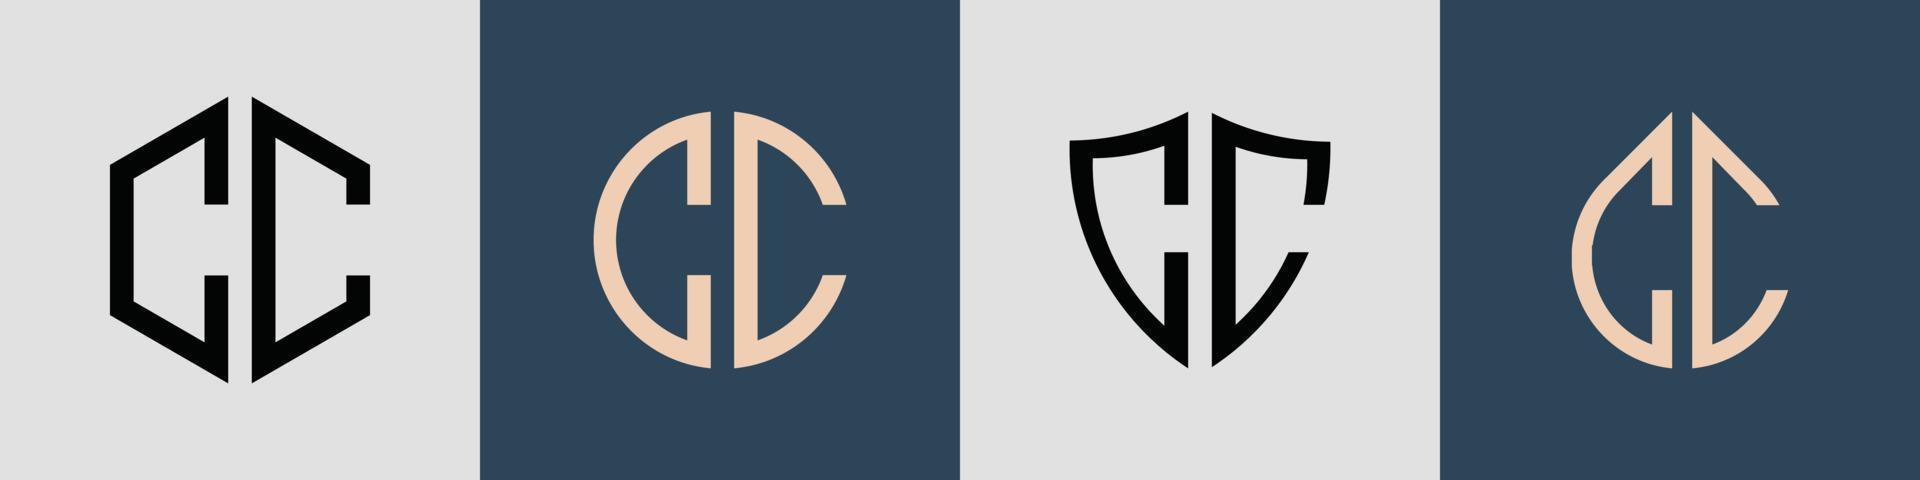 Paquete de diseños de logotipos cc con letras iniciales simples y creativas. vector